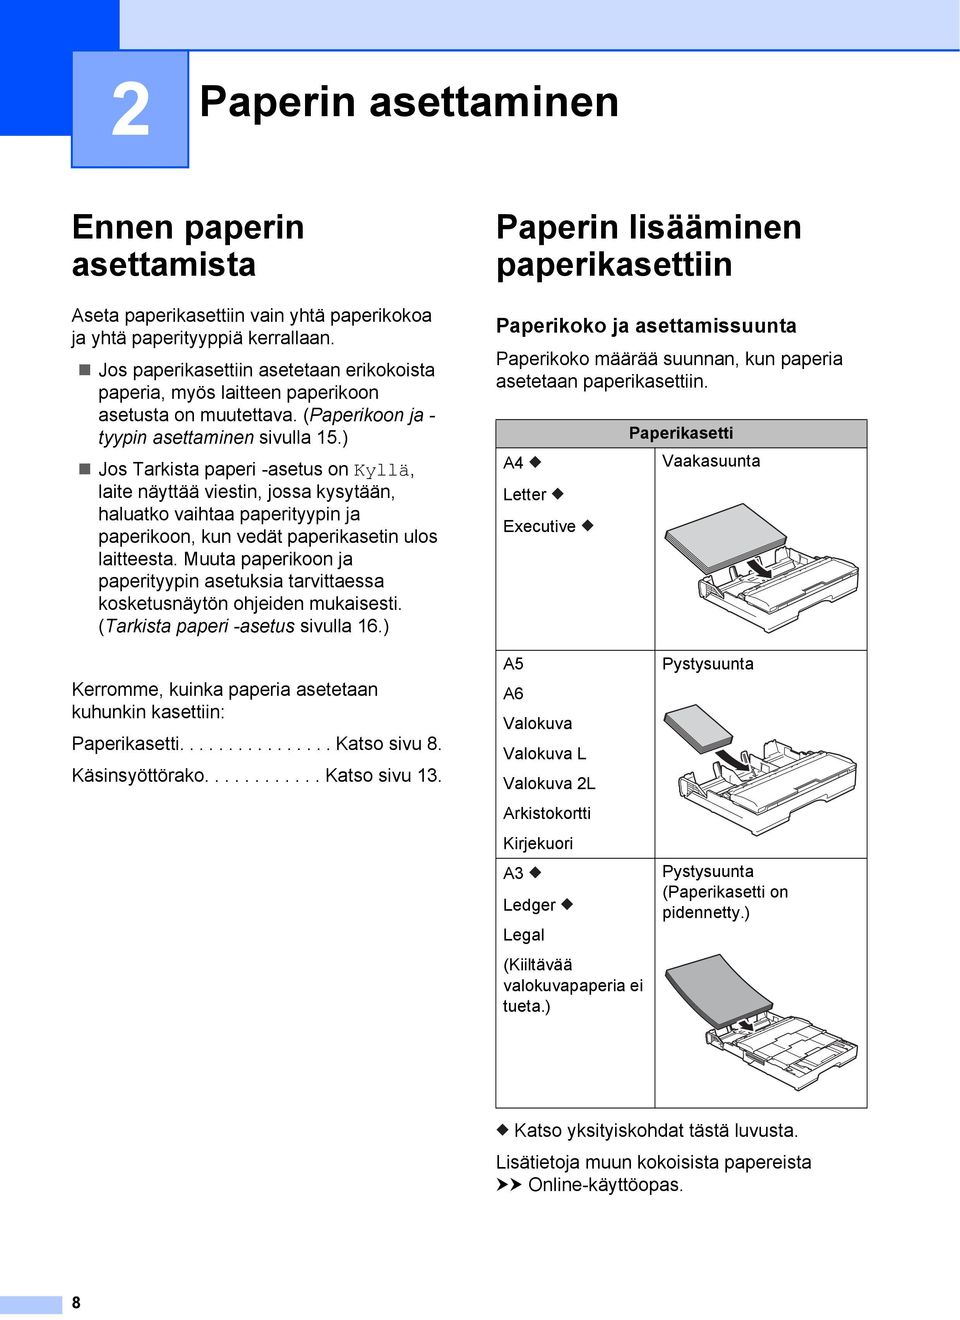 ) Jos Tarkista paperi -asetus on Kyllä, laite näyttää viestin, jossa kysytään, haluatko vaihtaa paperityypin ja paperikoon, kun vedät paperikasetin ulos laitteesta.